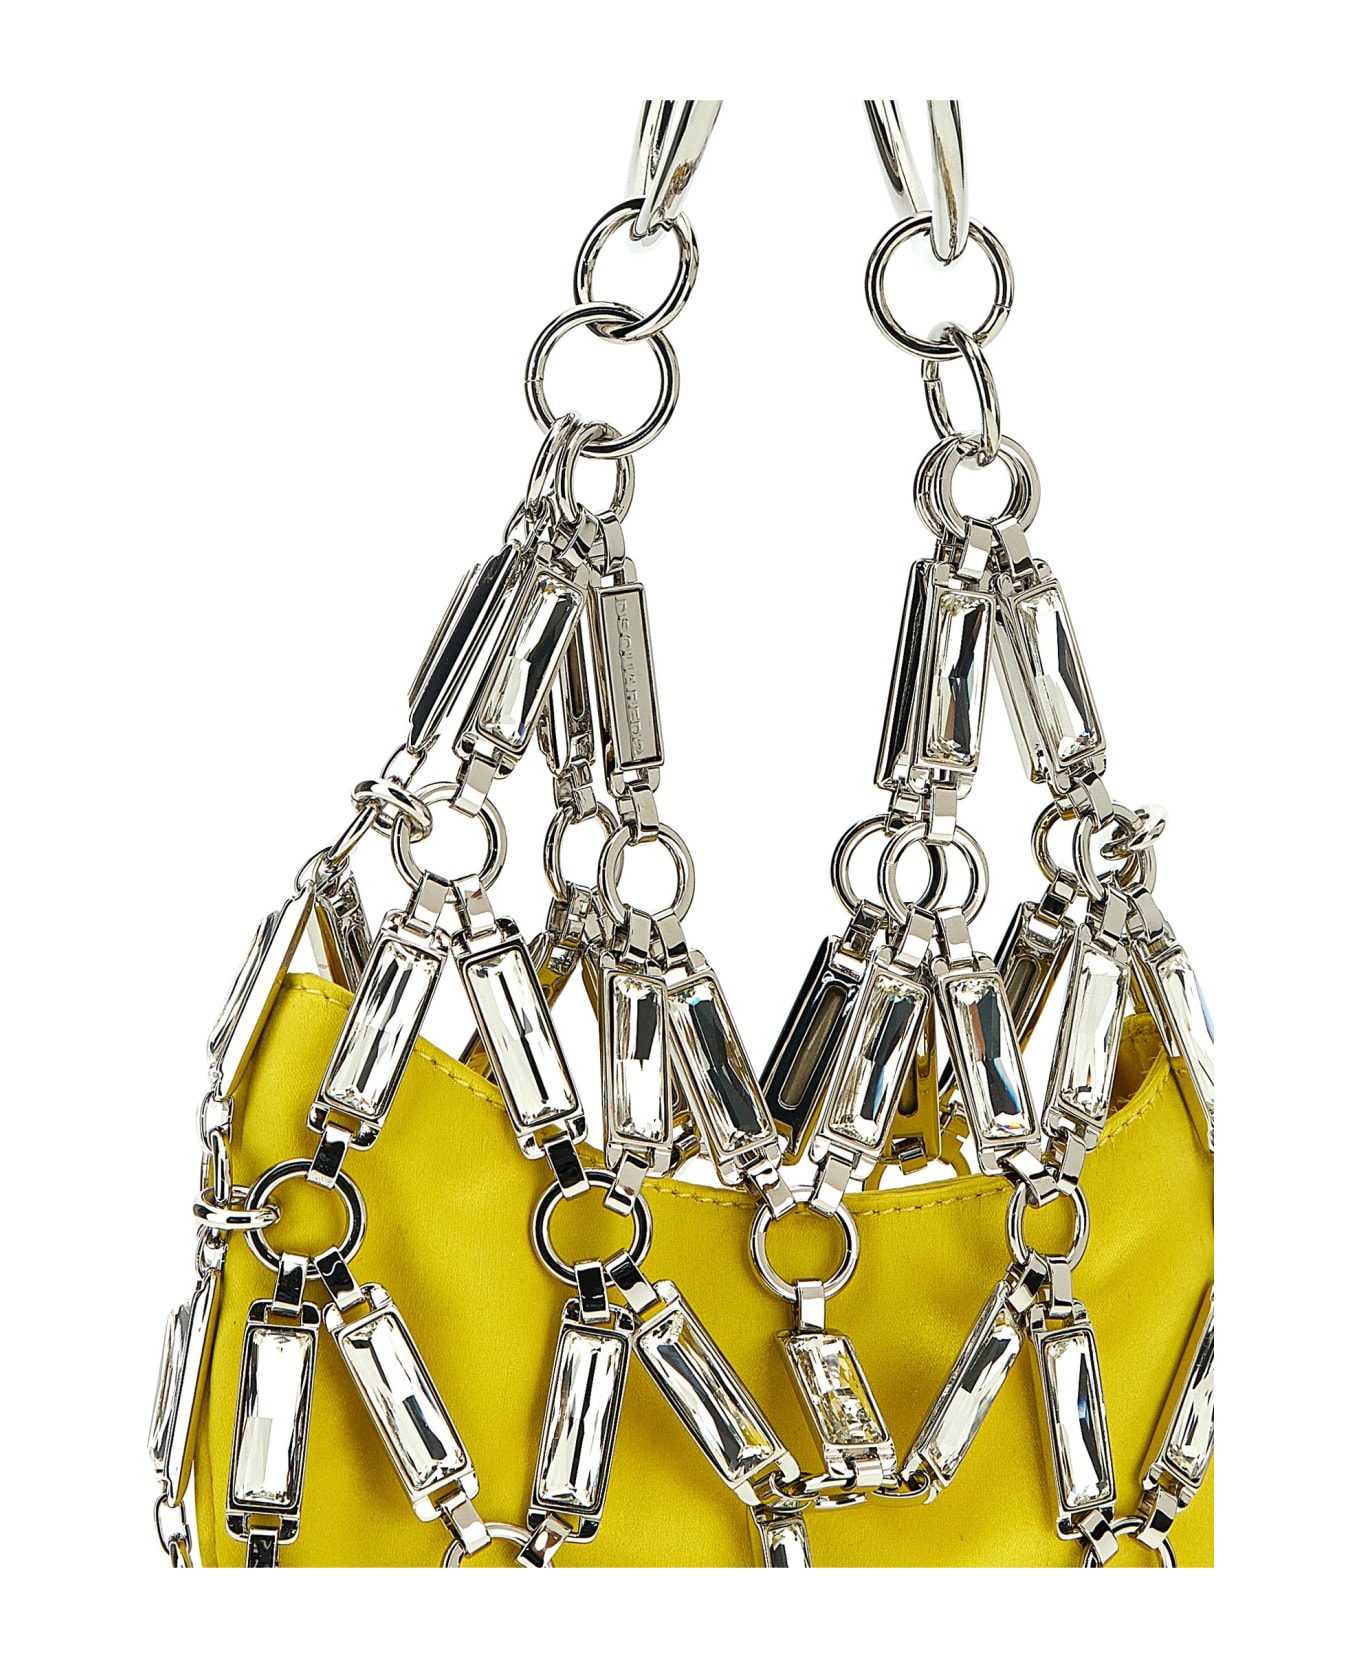 Dsquared2 'cage' Handbag - Yellow トートバッグ